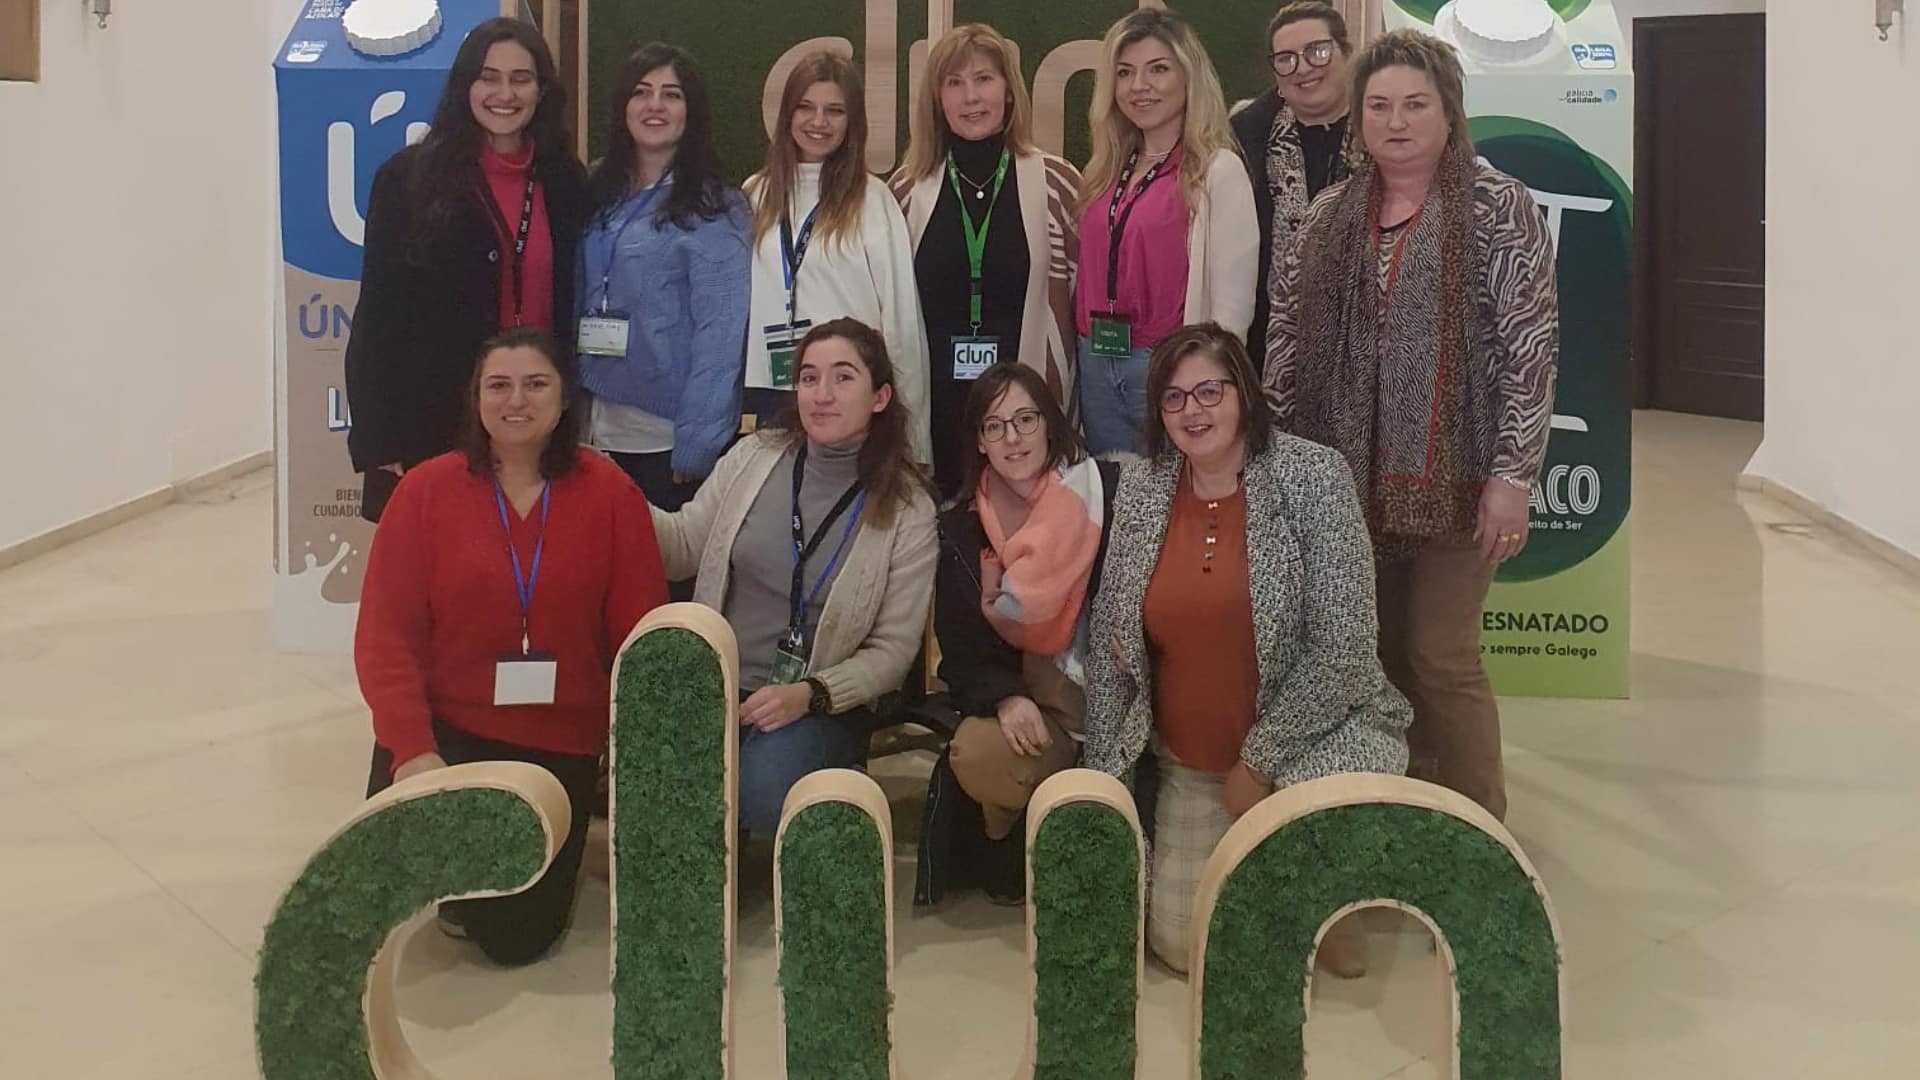 El encuentro en CLUN de Mulleres de Seu con educadoras turcas | CLUN